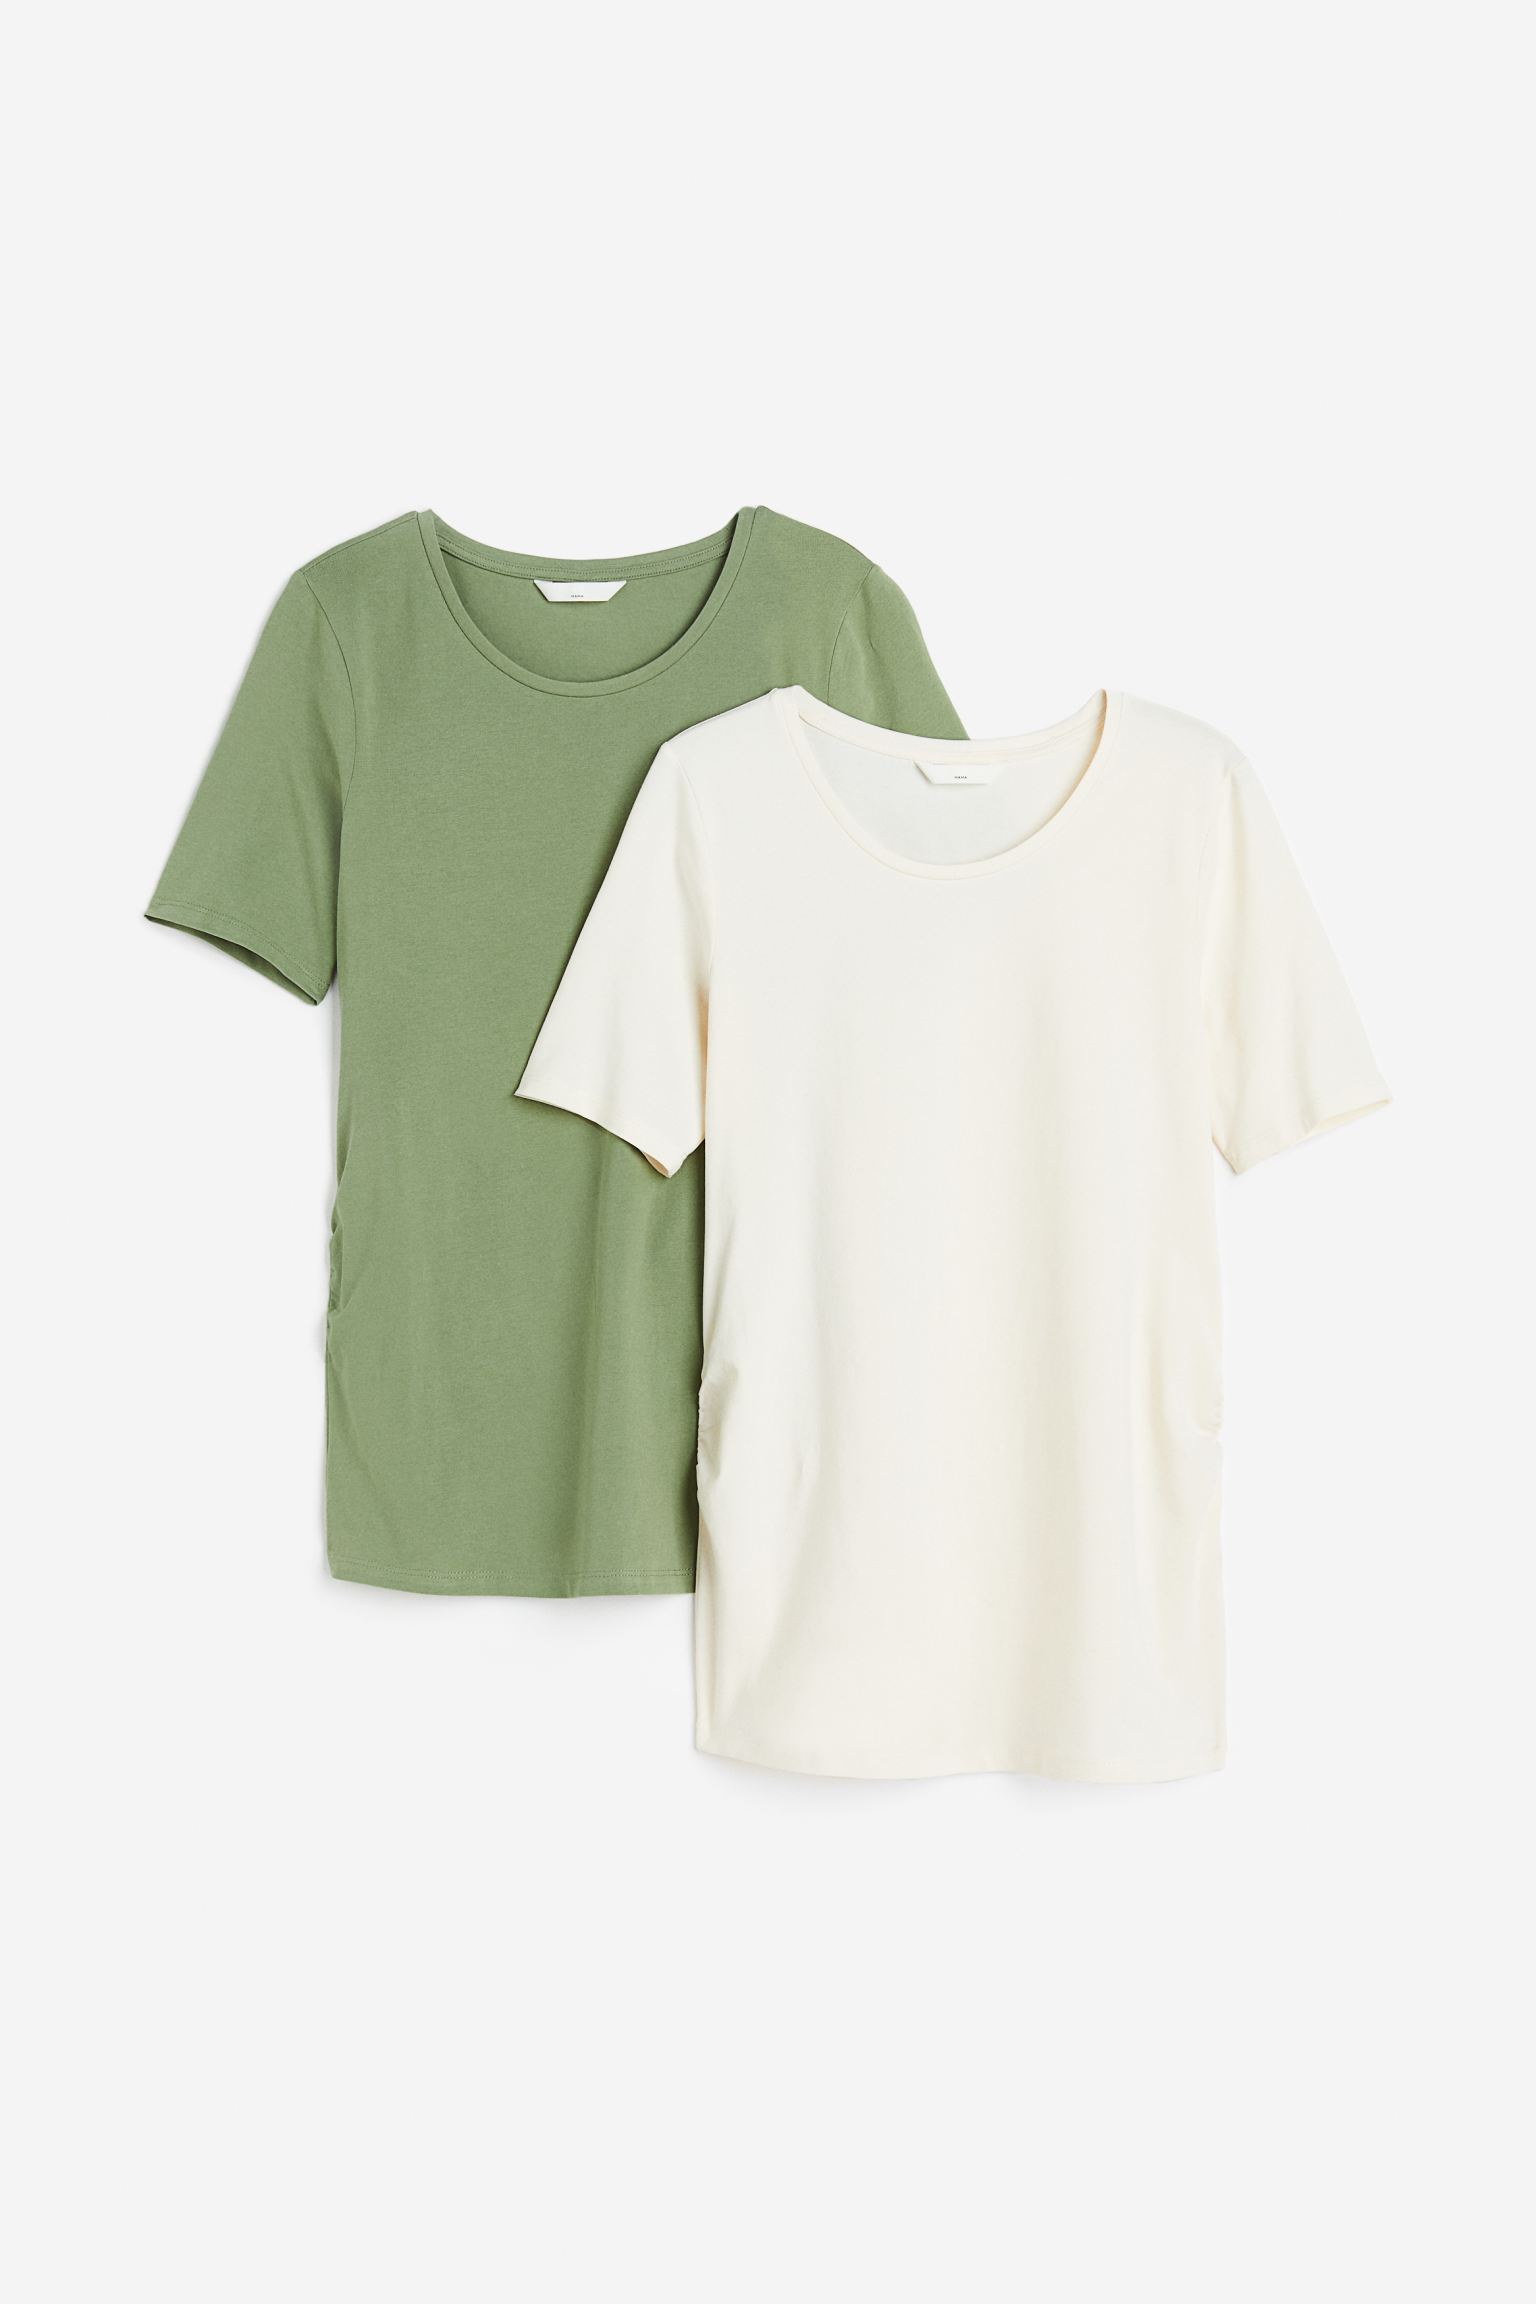 Комплект футболок женских H&M 1090126017 зеленых M (доставка из-за рубежа)